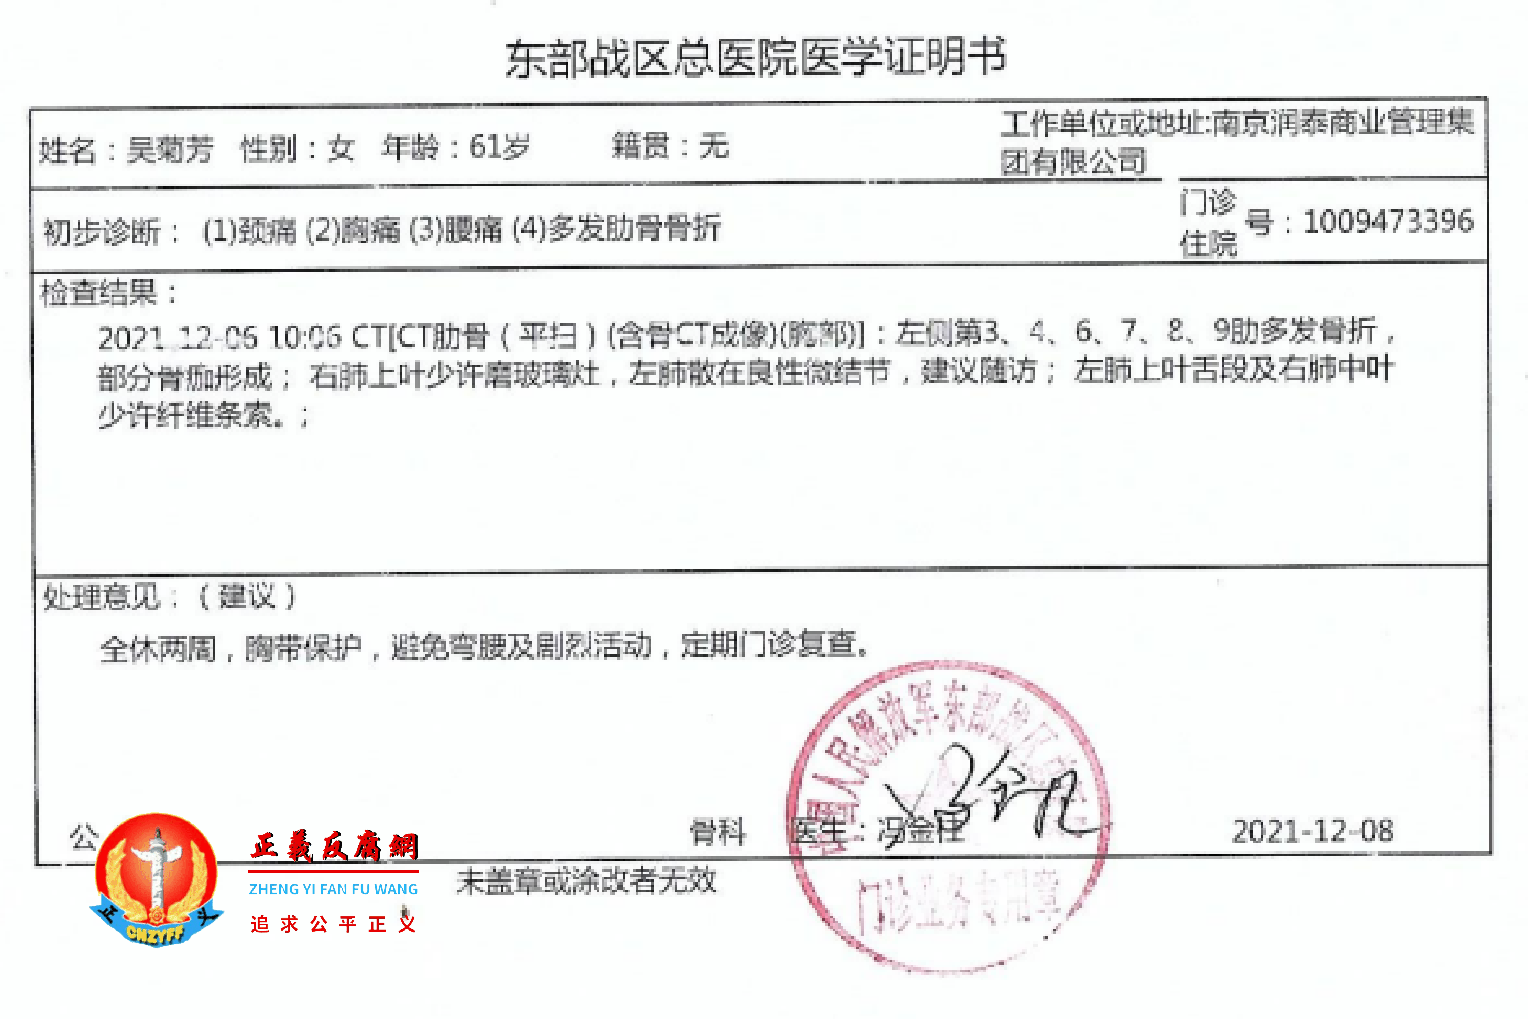 2021年12月8日吴菊芳的医学证明书。.png